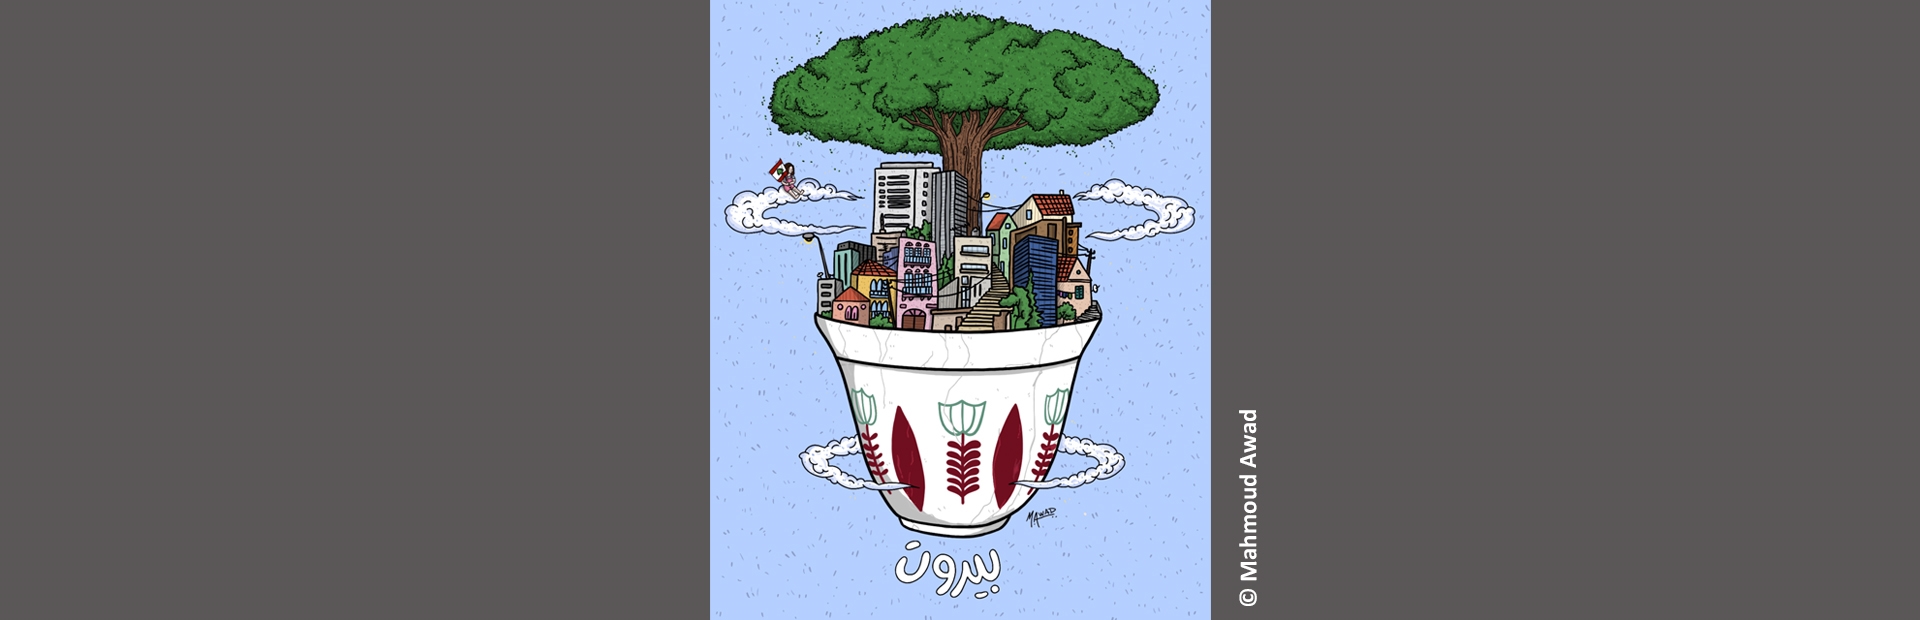 السلامة البيئيّة في إعادة إعمار بيروت - نصائح لترميم يُراعي البيئة